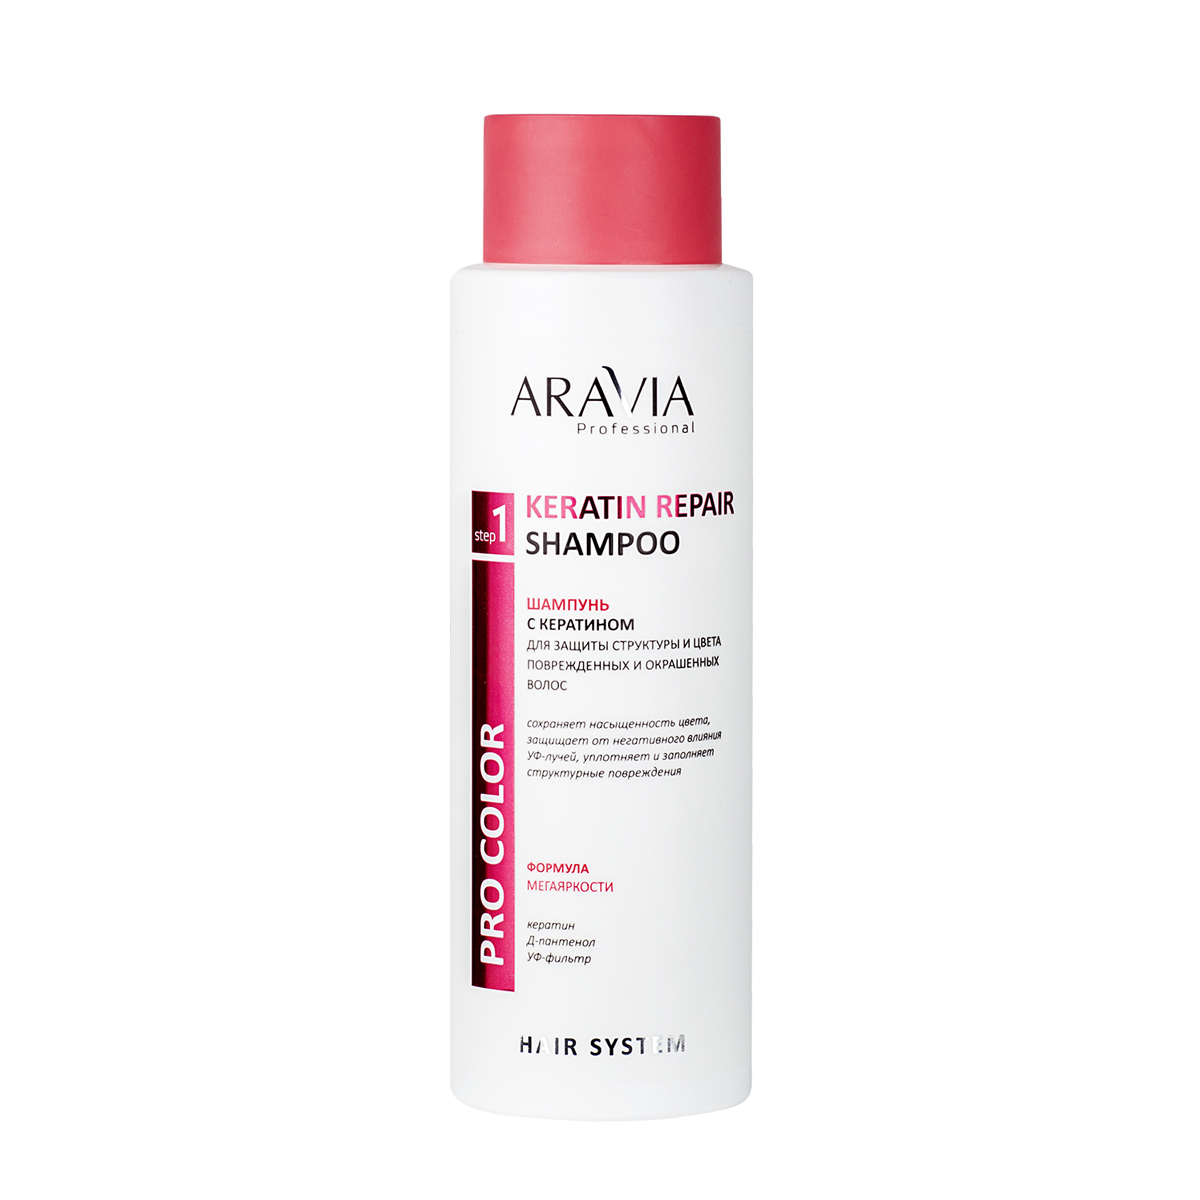 цена Aravia Professional Шампунь с кератином для защиты структуры и цвета поврежденных и окрашенных волос Keratin Repair Shampoo, 400 мл (Aravia Professional, Уход за волосами)